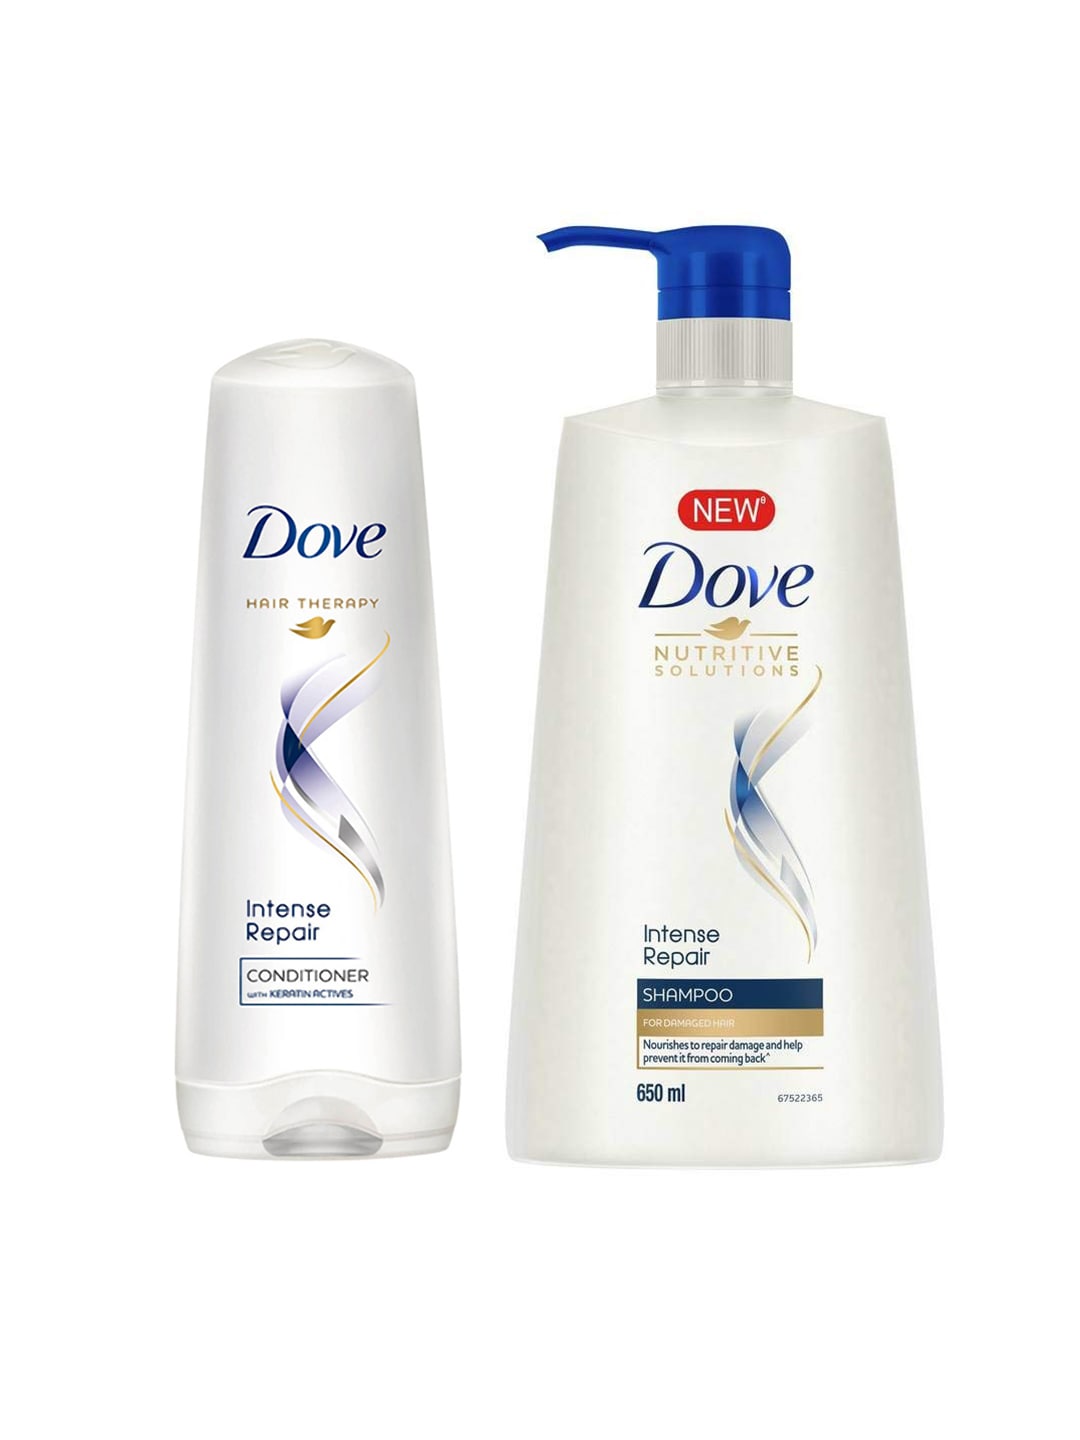 Dove Unisex Set of Intense Repair Shampoo & Conditioner Price in India